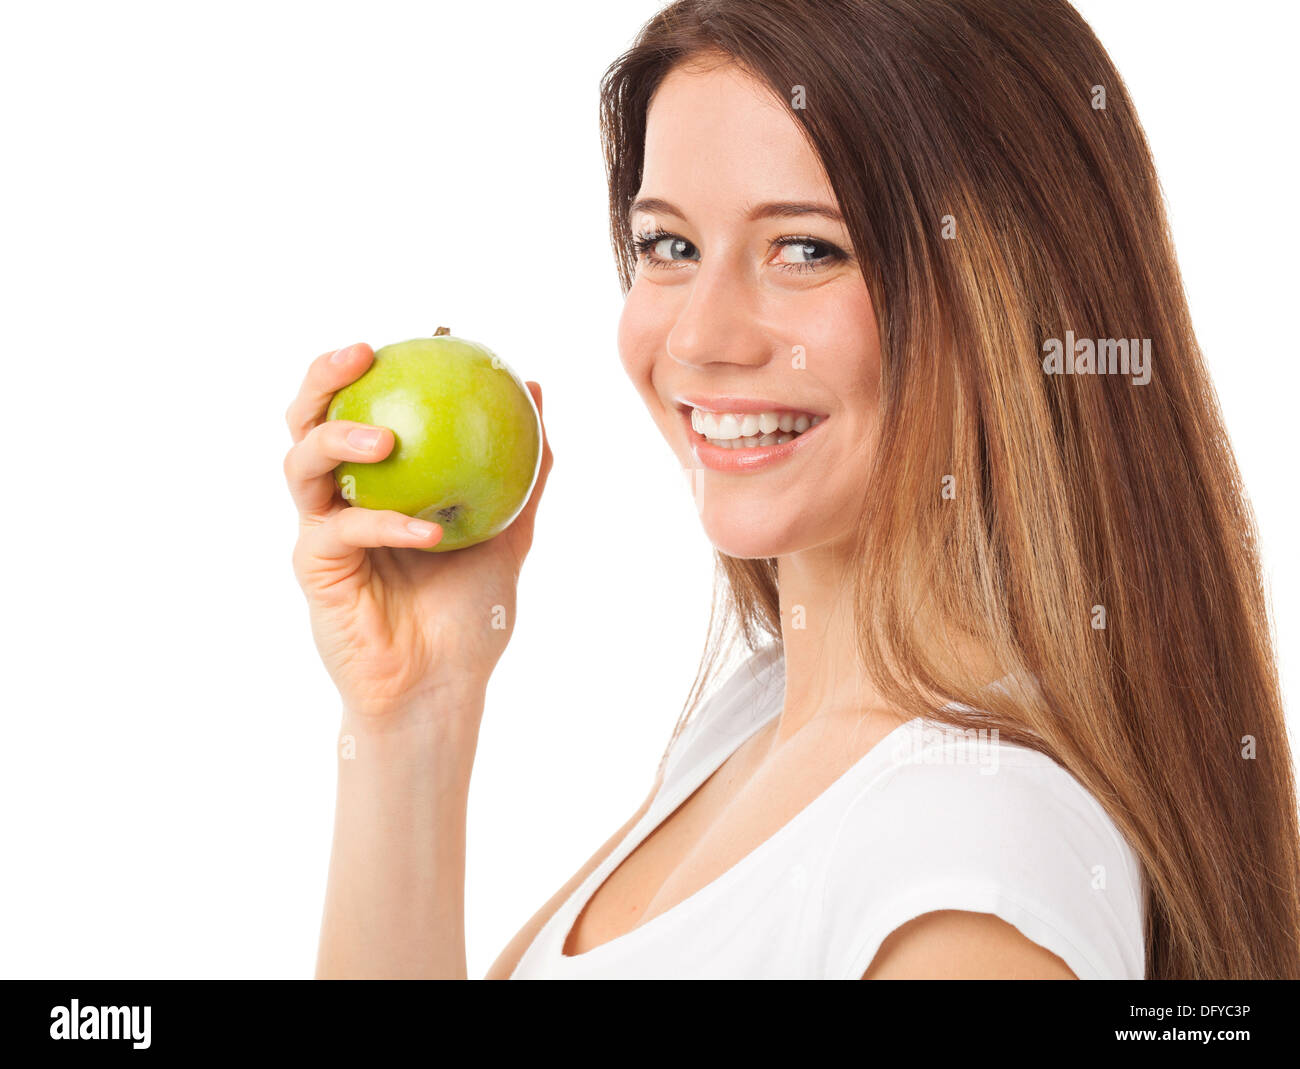 Bella giovane donna tenendo una mela verde, isolato su bianco Foto Stock